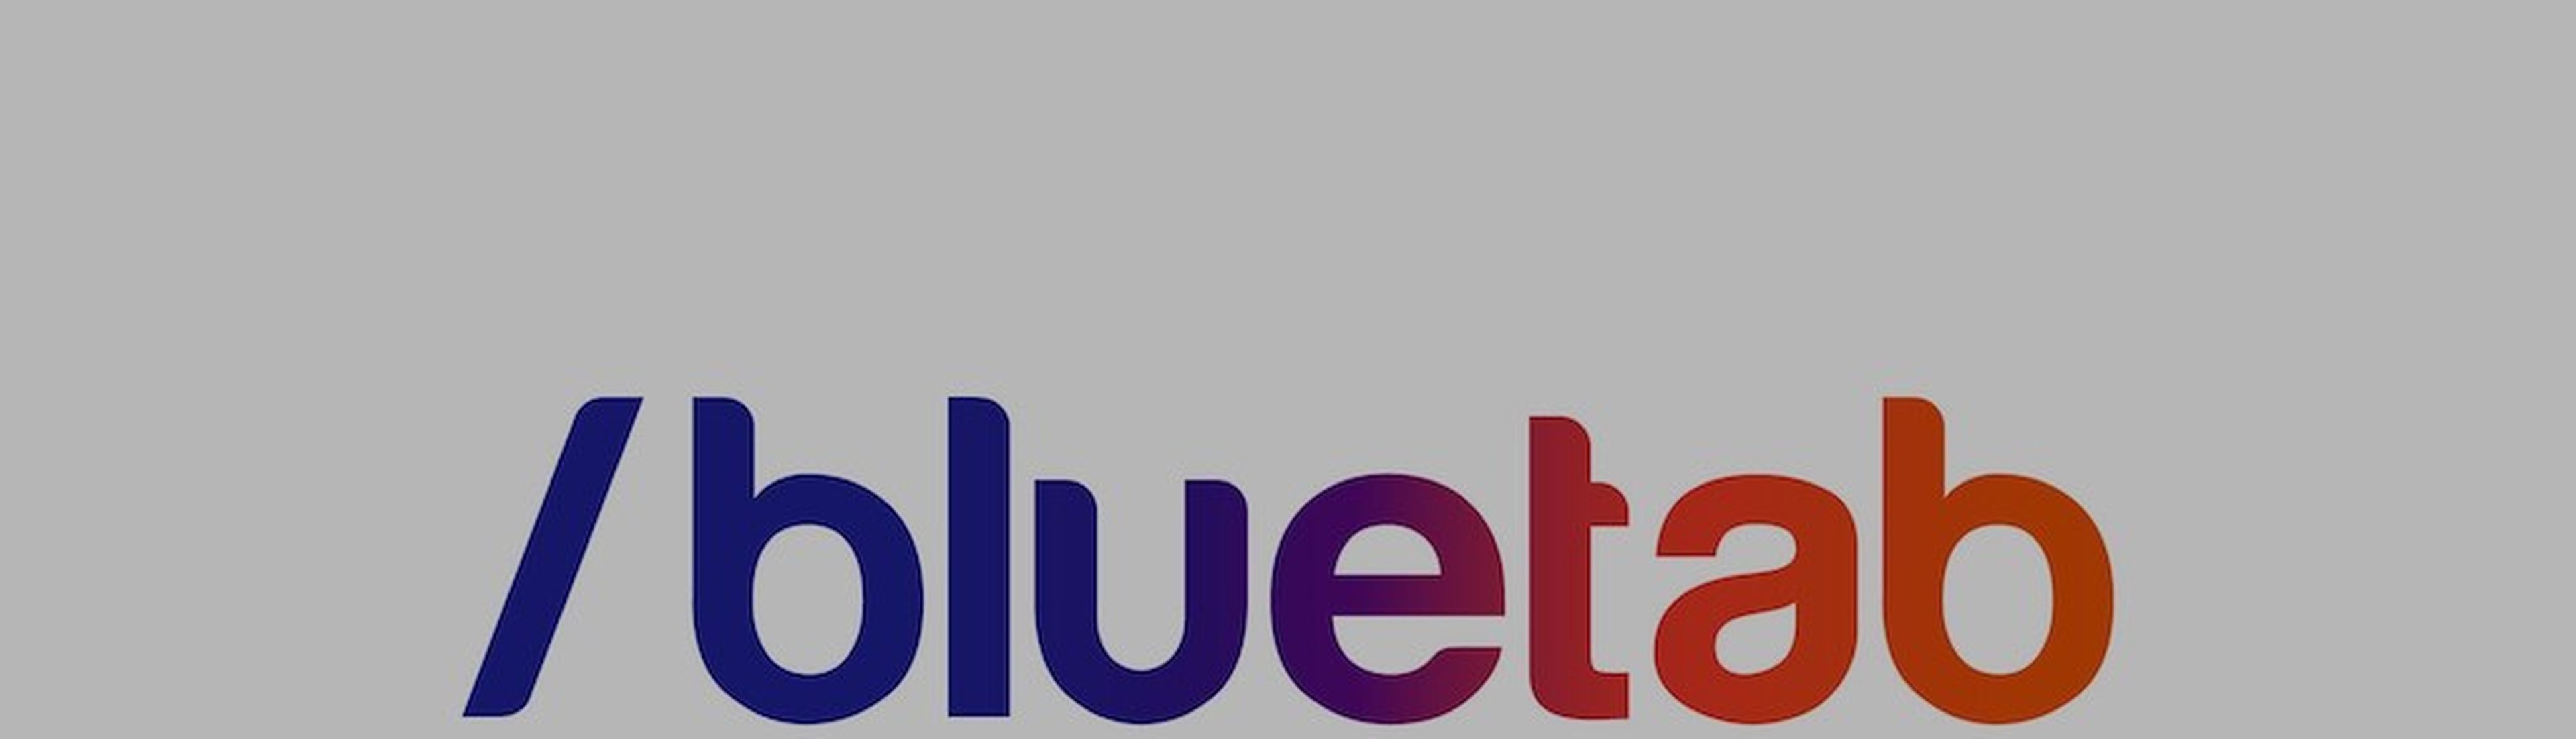 Bluetab, an IBM Company